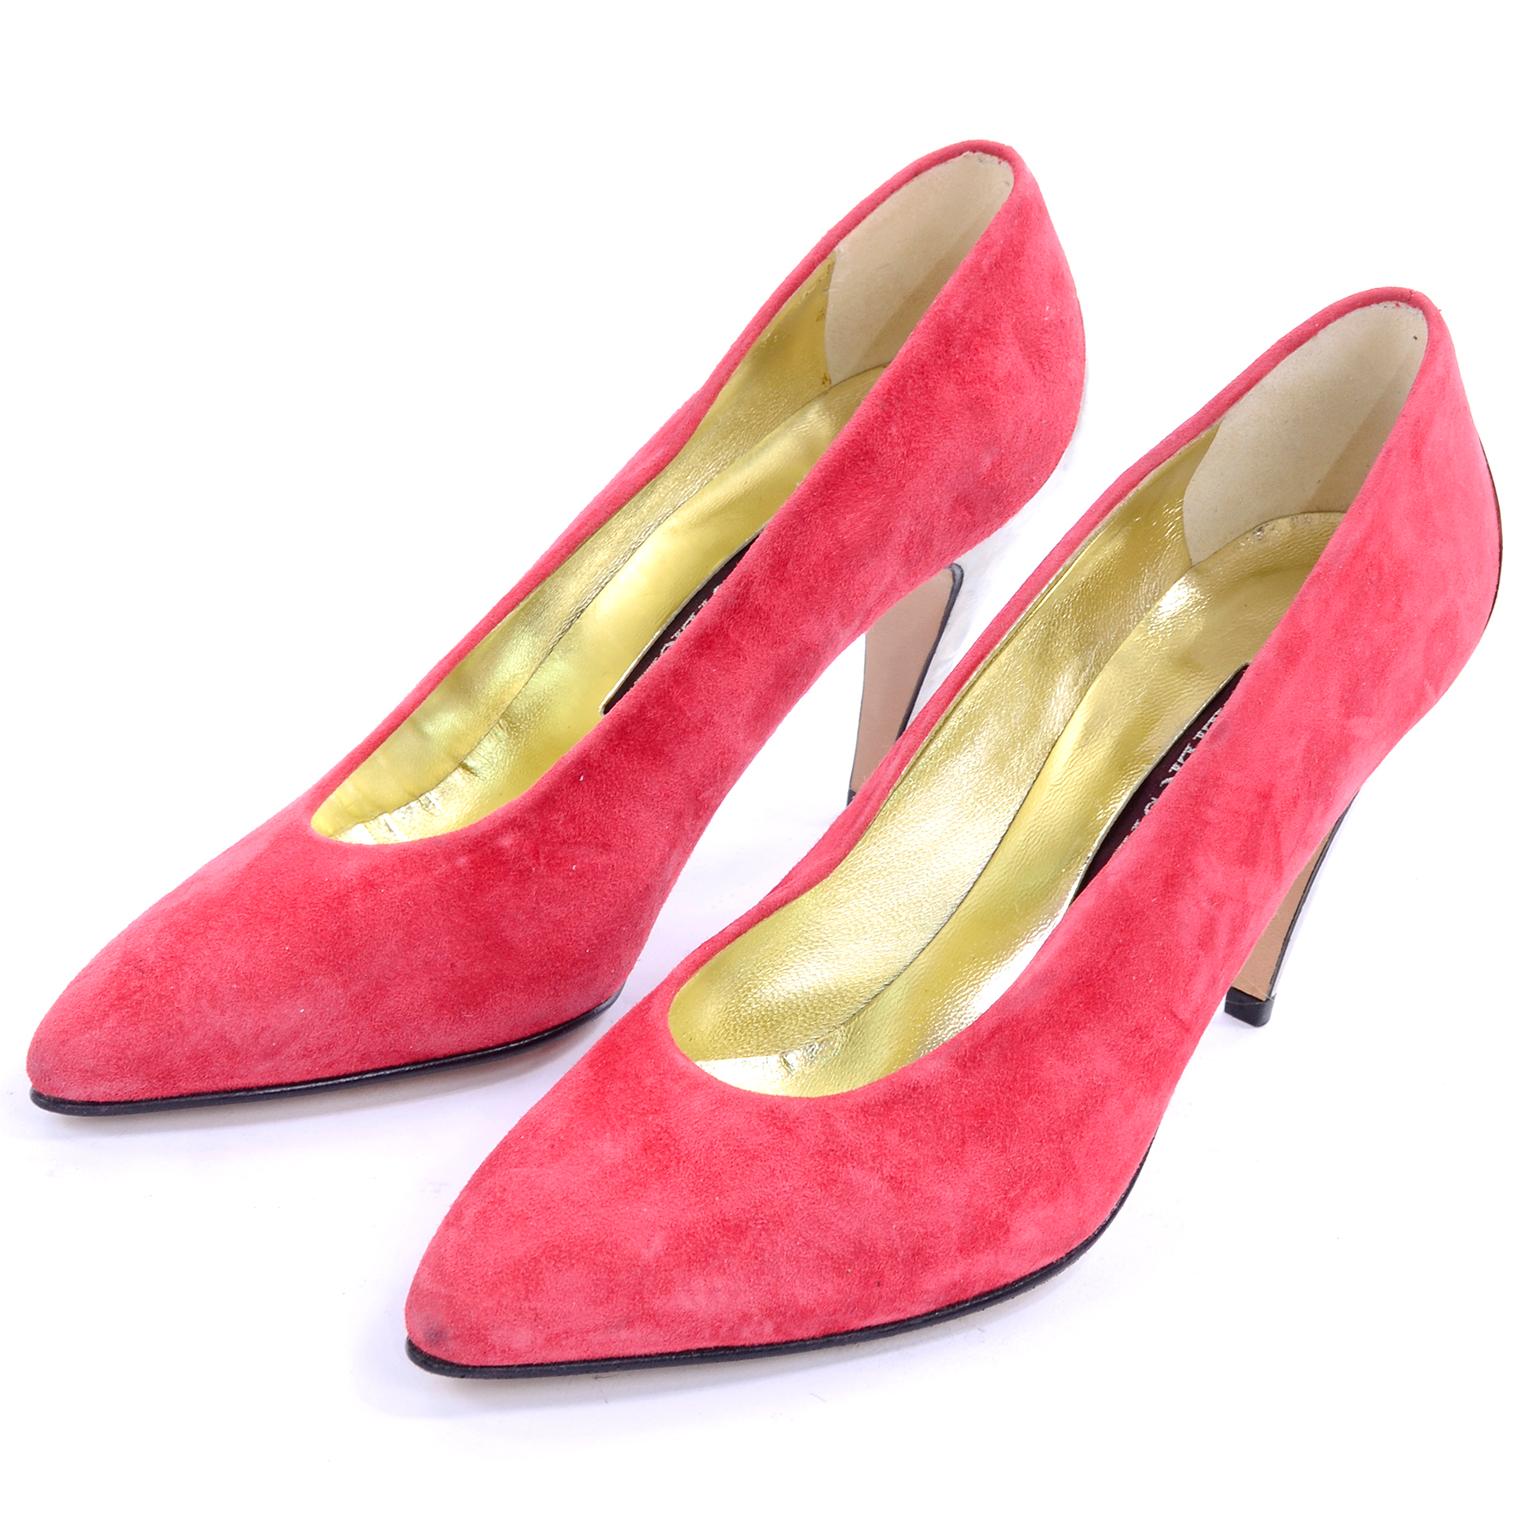 1980s heels